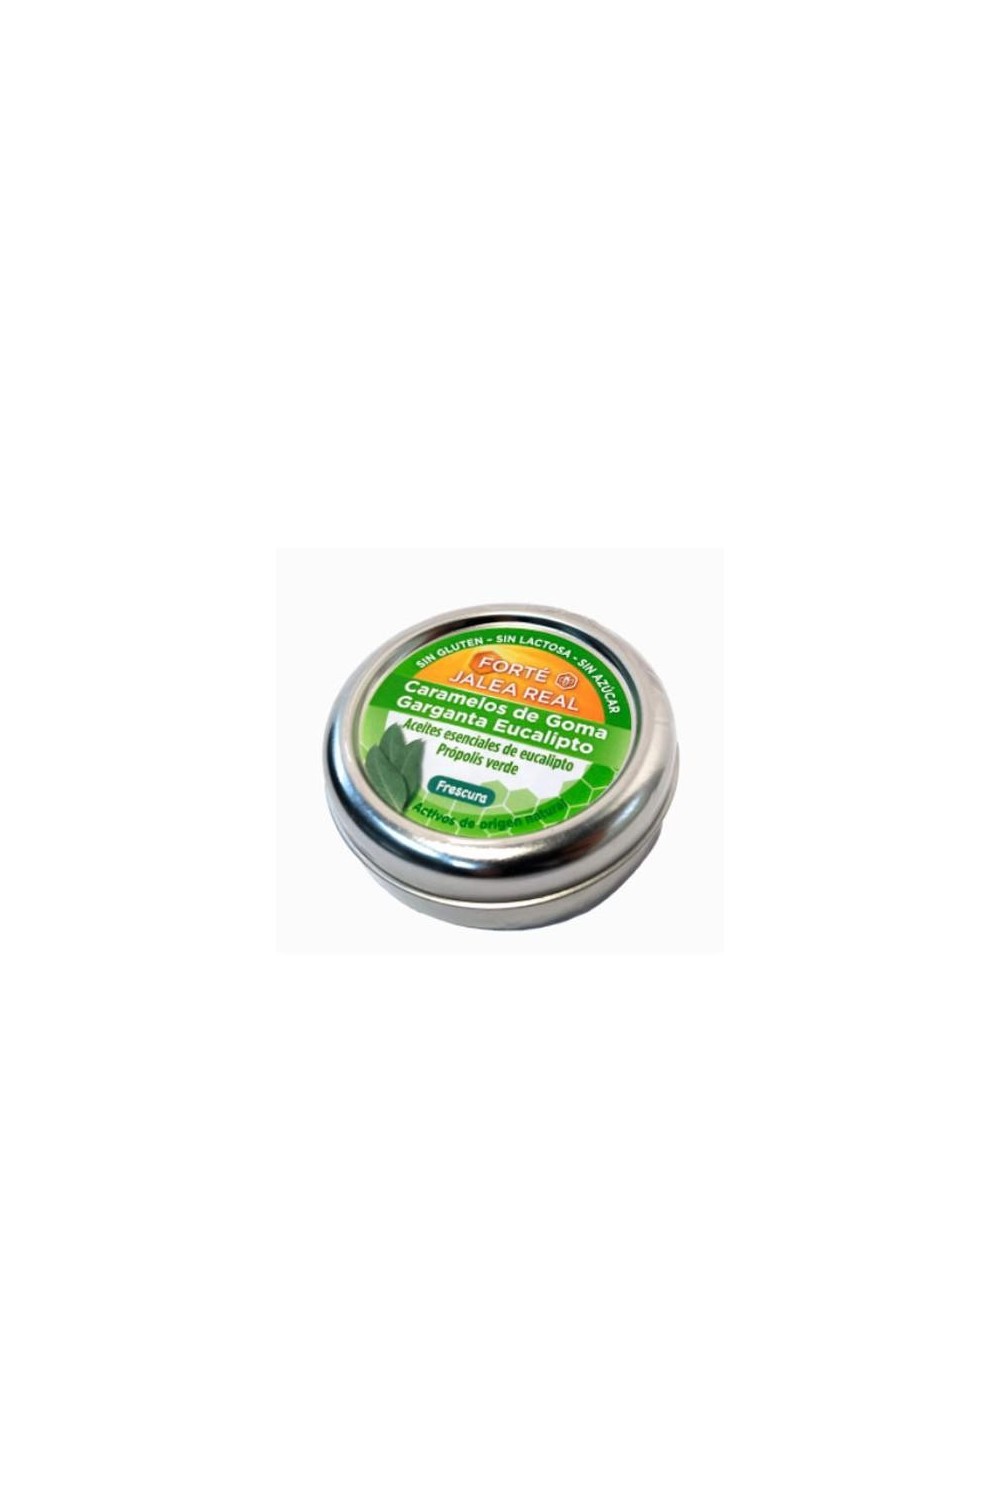 FORTÉ PHARMA - Forte Pharma Royal Jelly Royal Jelly Eucalyptus Throat Candy 45g